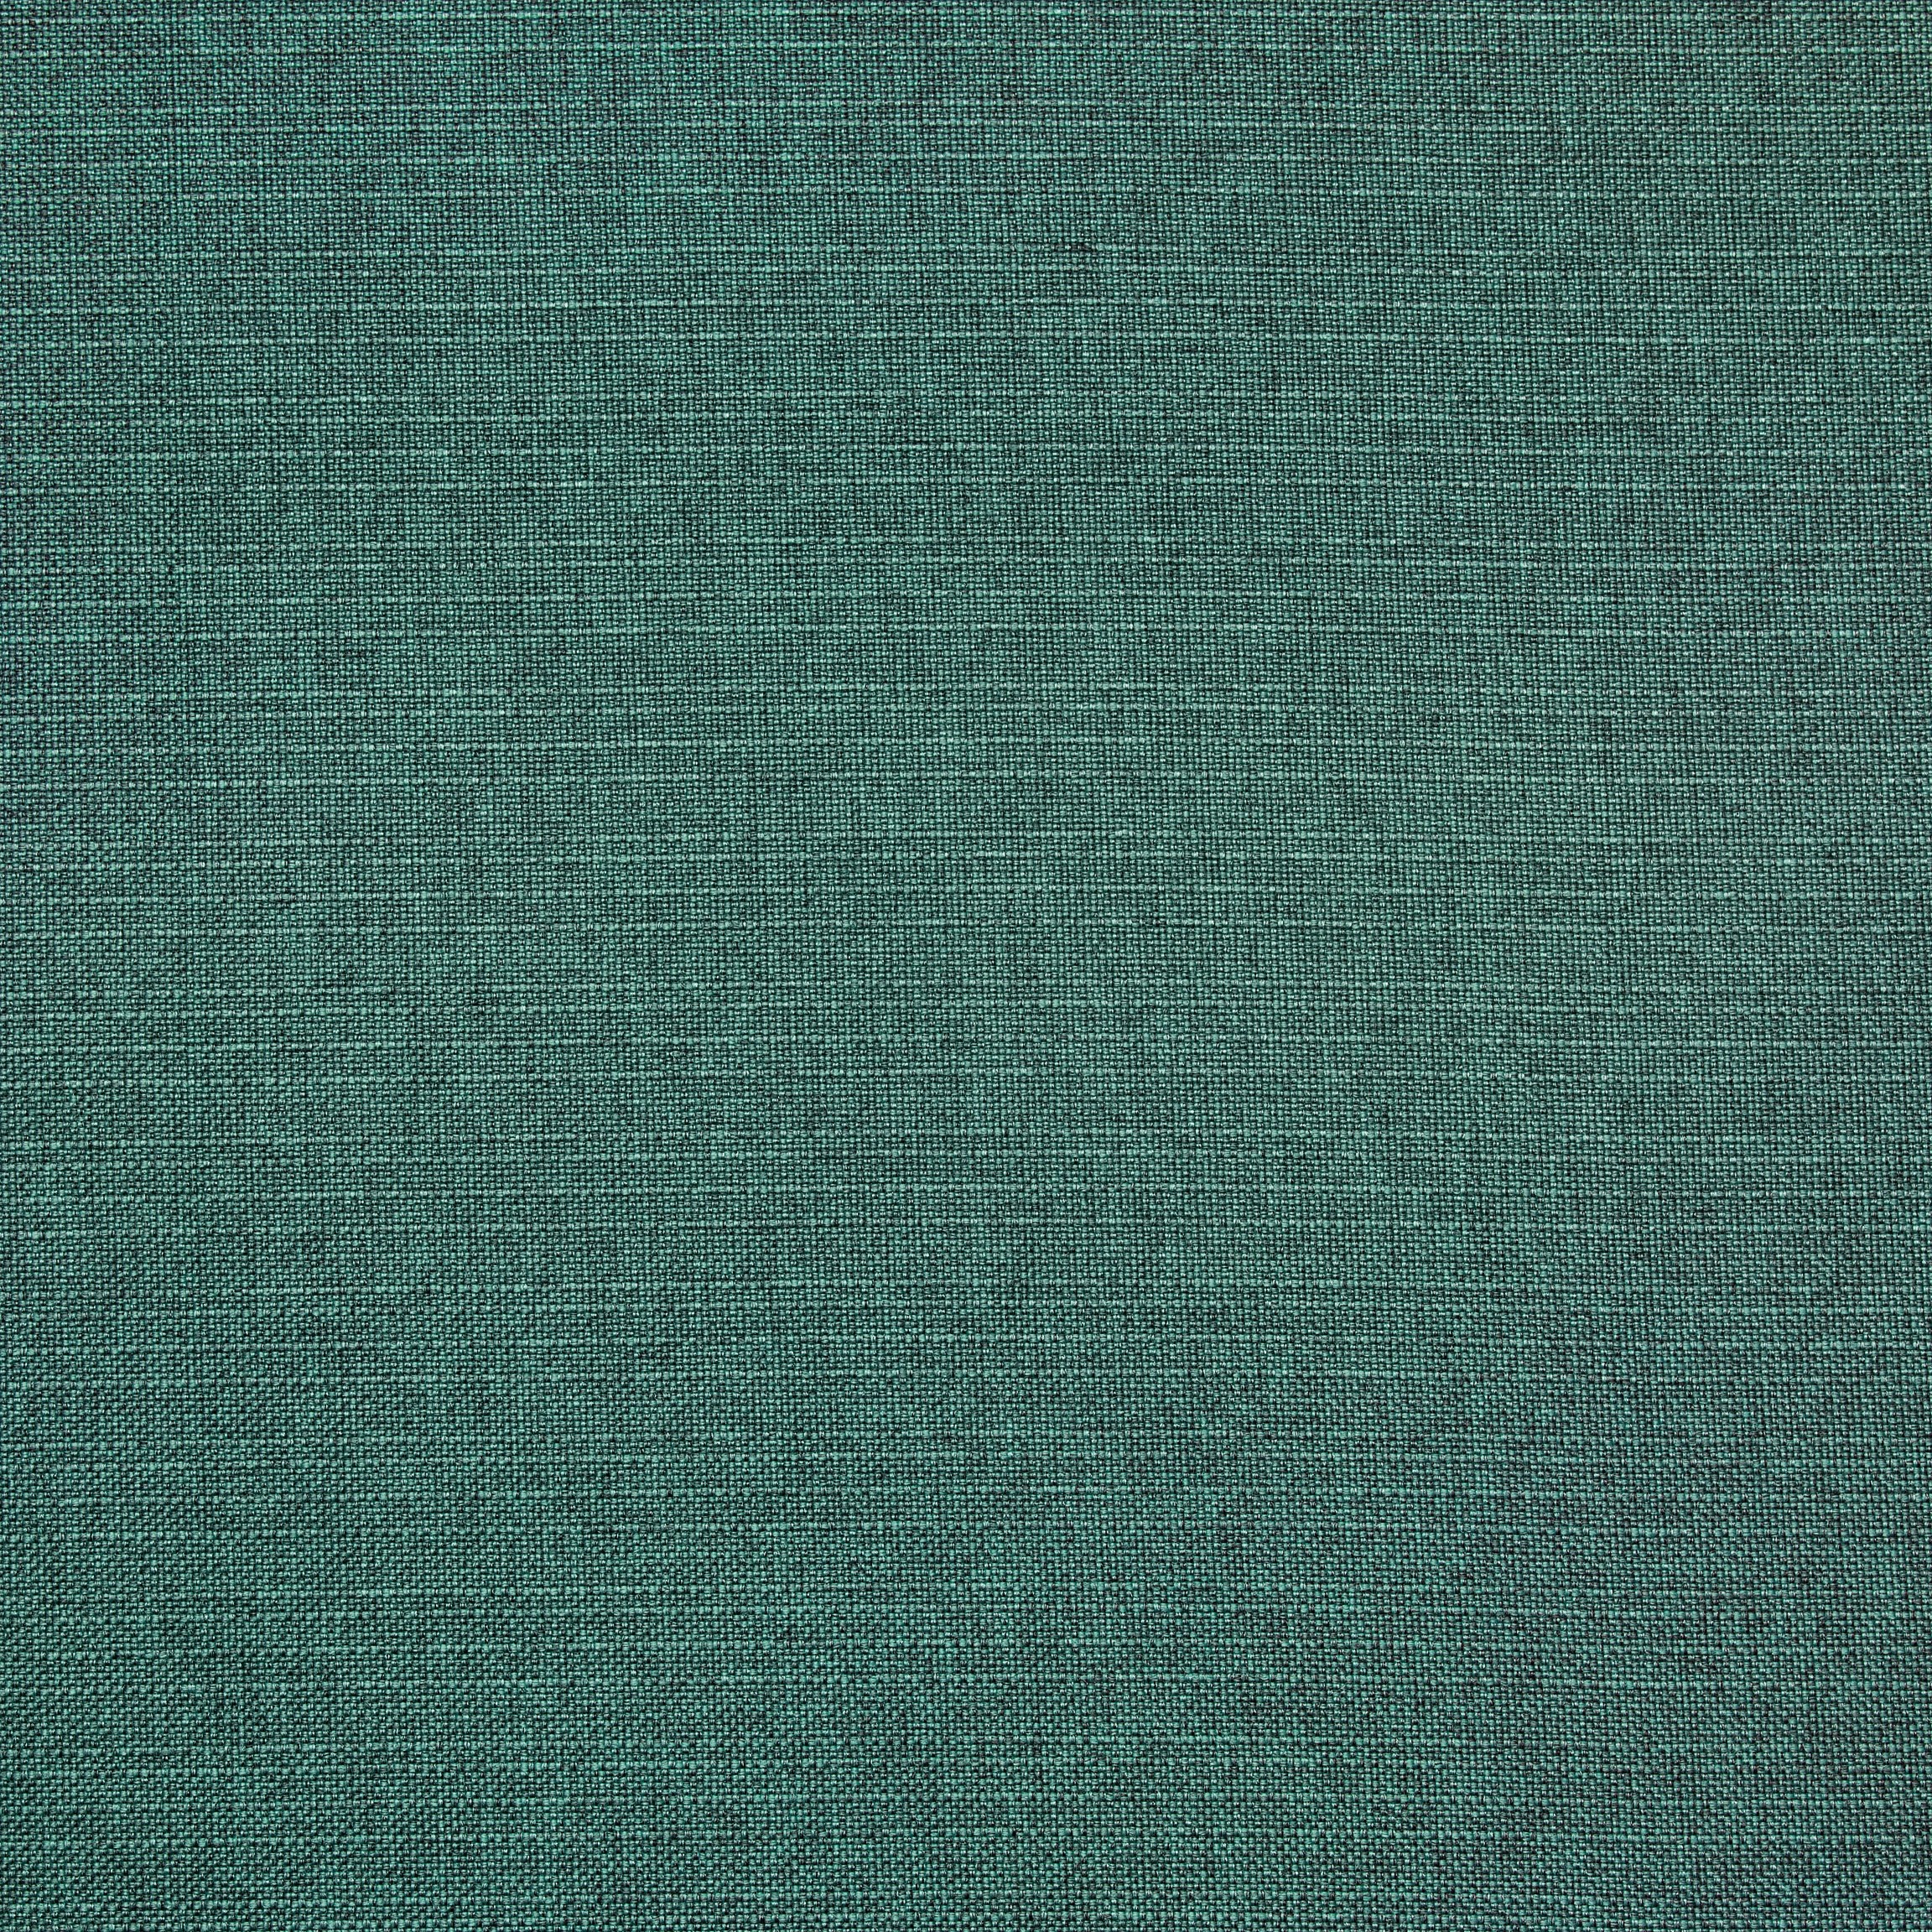  Портьерная ткань ZANE EMERALD, ширина 280 см  - Фото